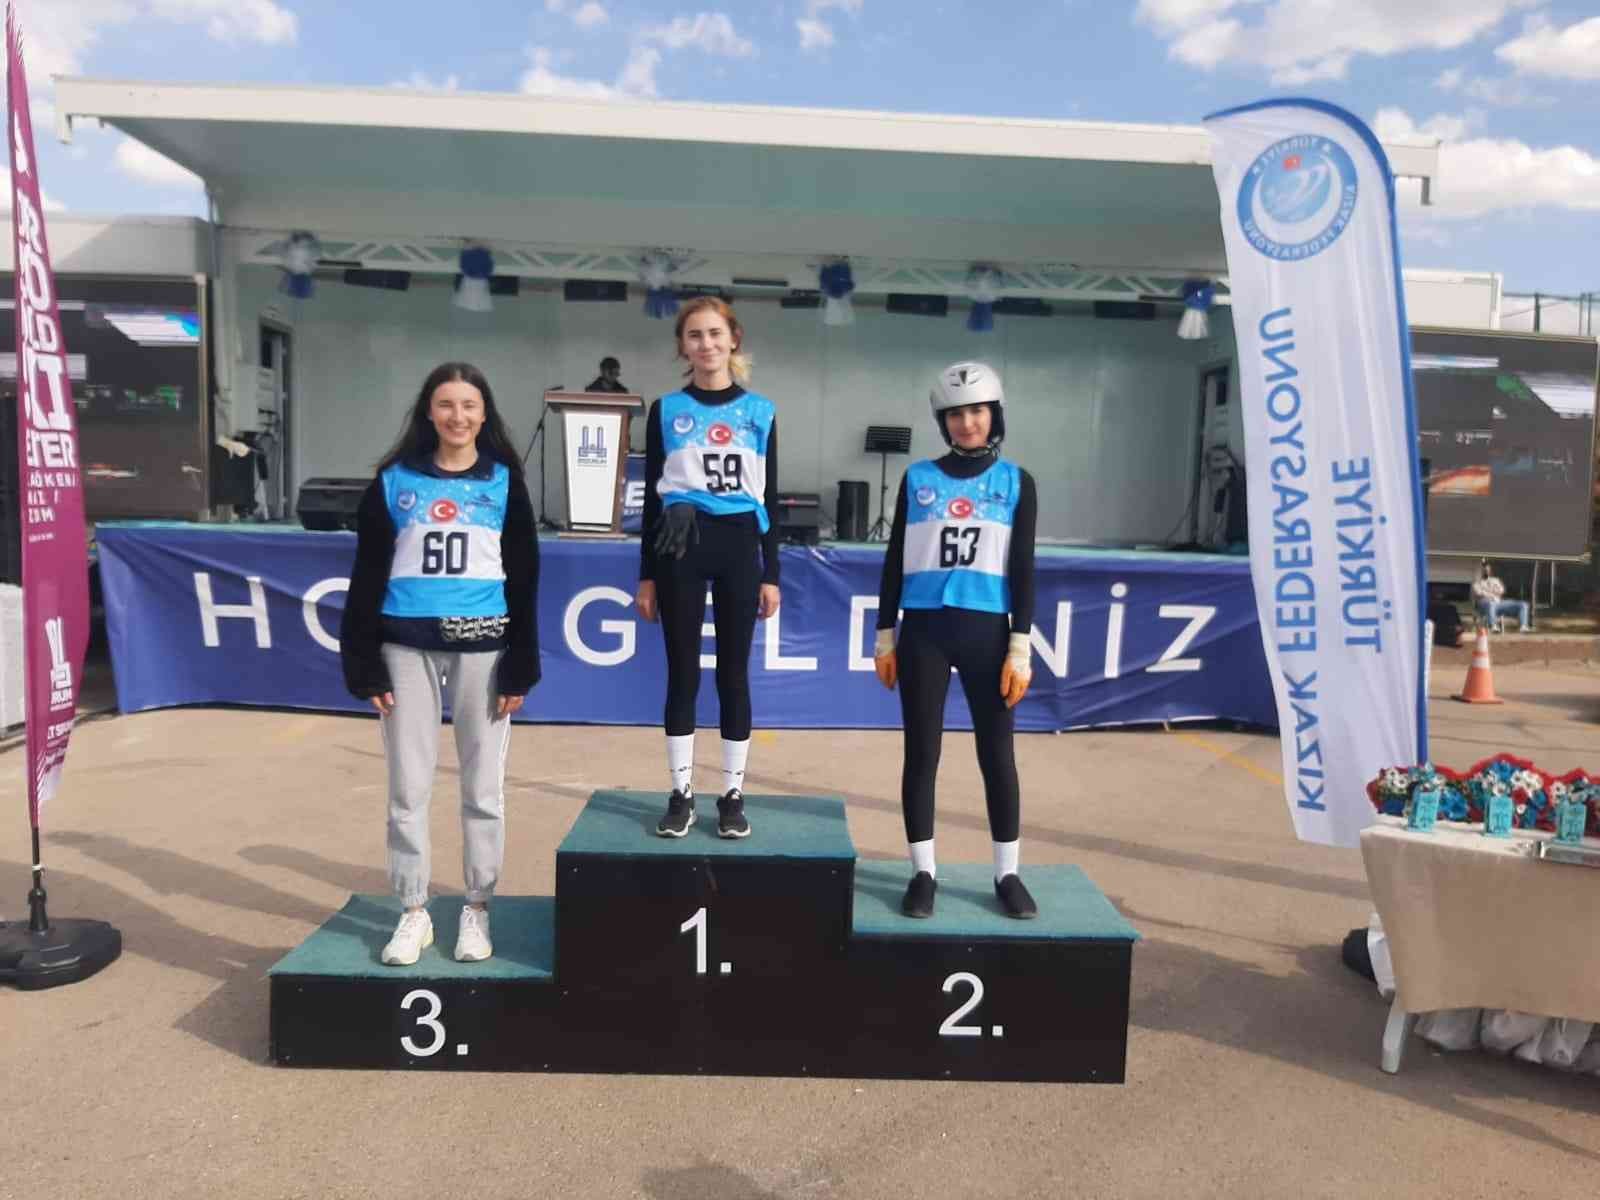 Gedizli sporcular tekerlekli kızak şampiyonasına katıldılar #kutahya